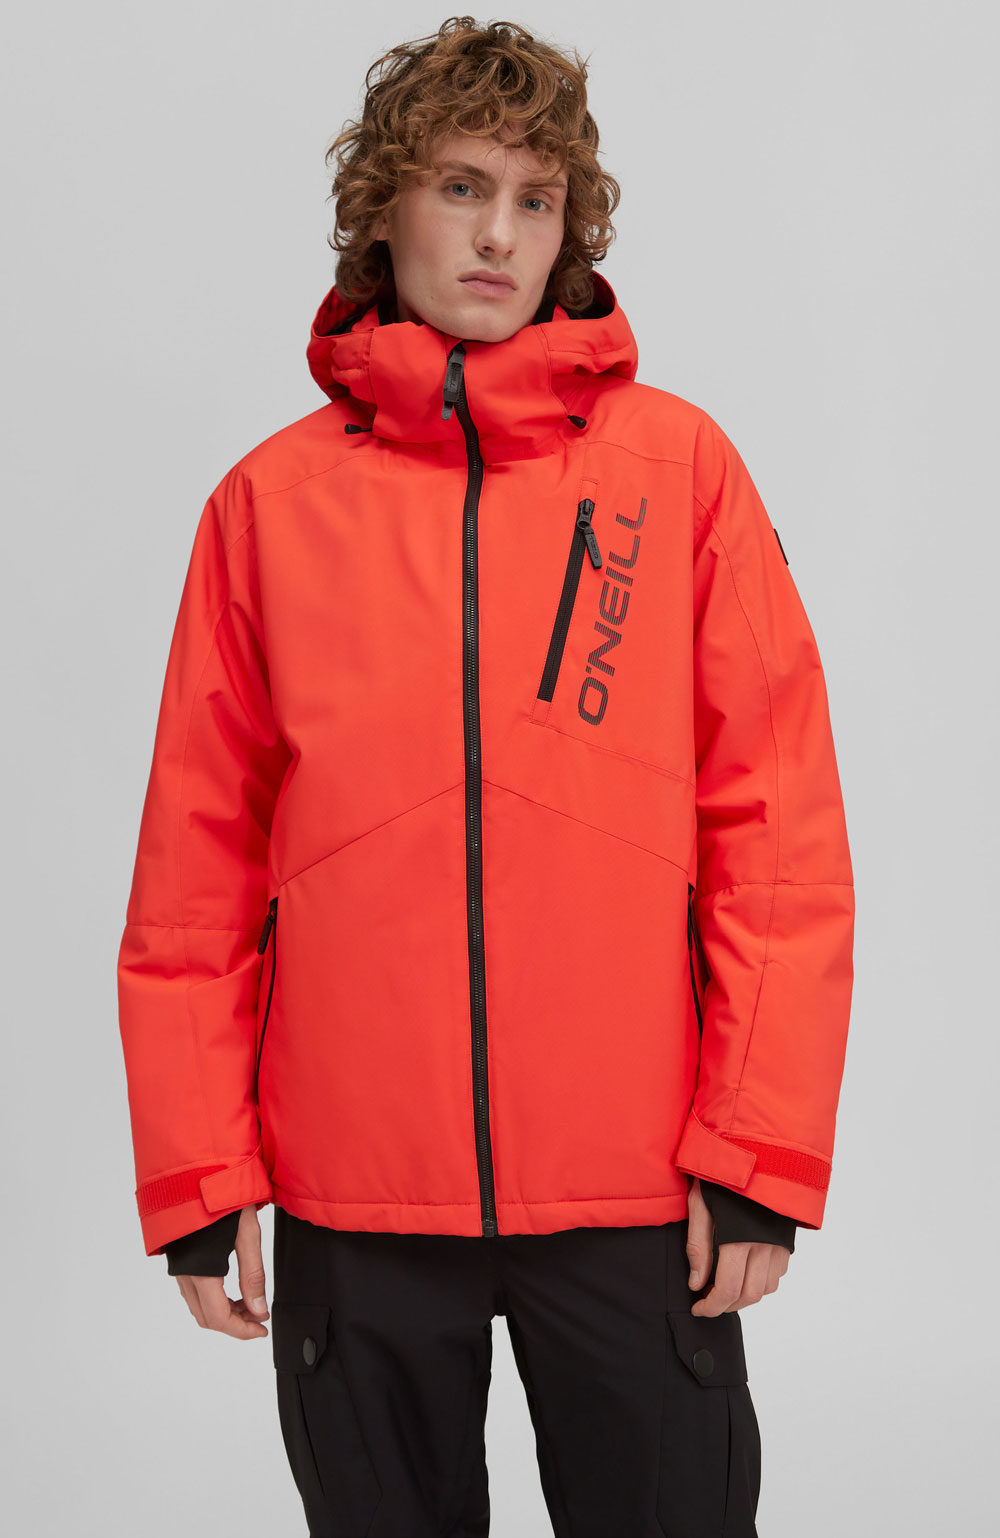 Pánská lyžařská/snowboardová bunda